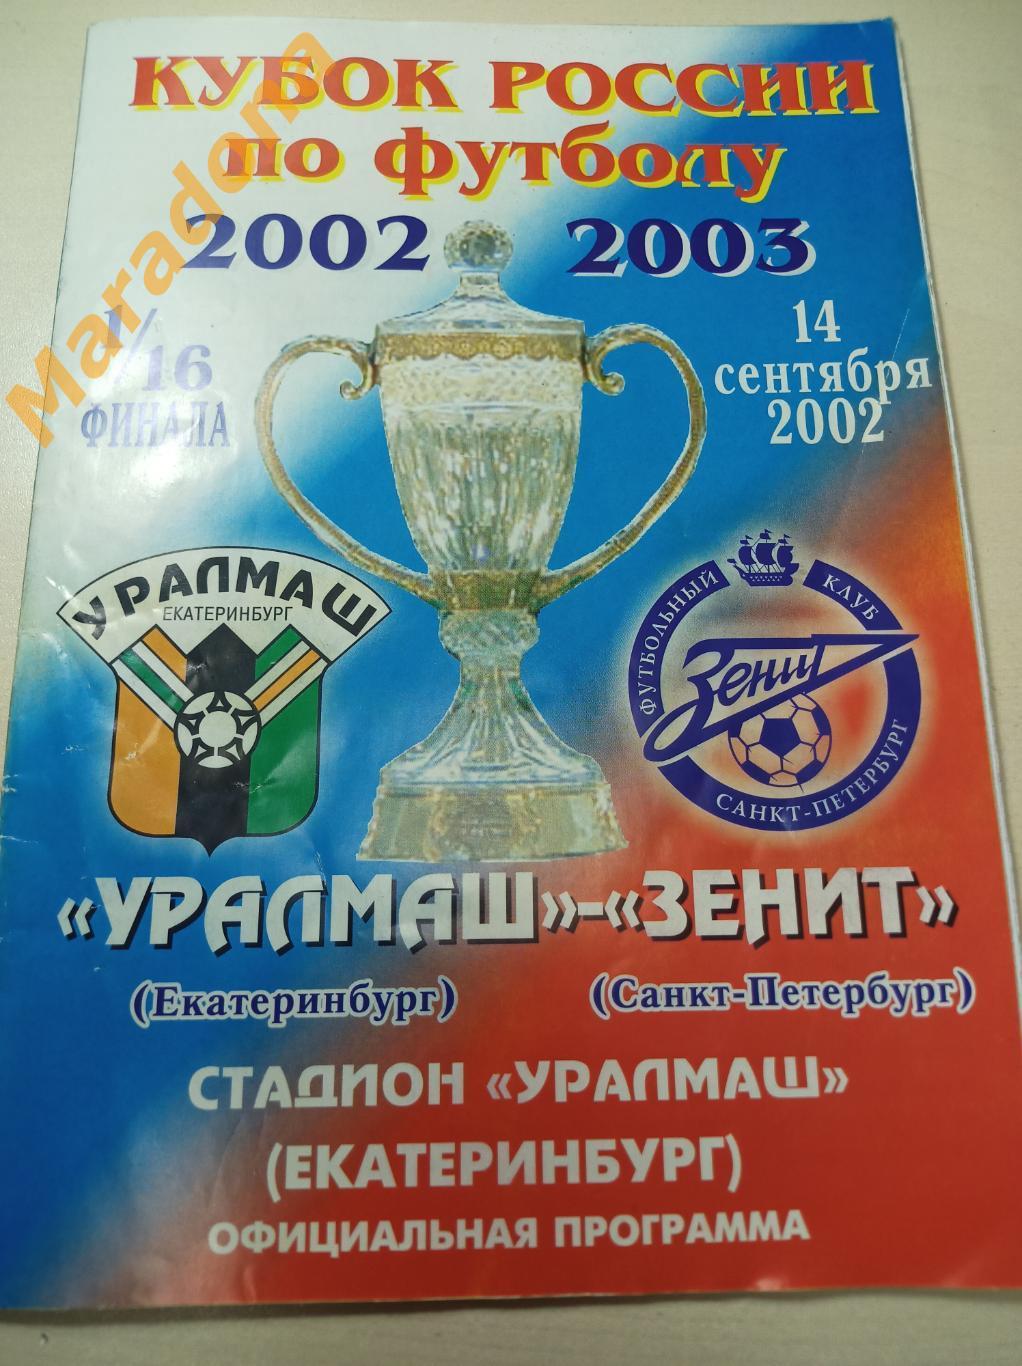 Уралмаш Екатеринбург - Зенит Санкт-Петербург 2002 Кубок